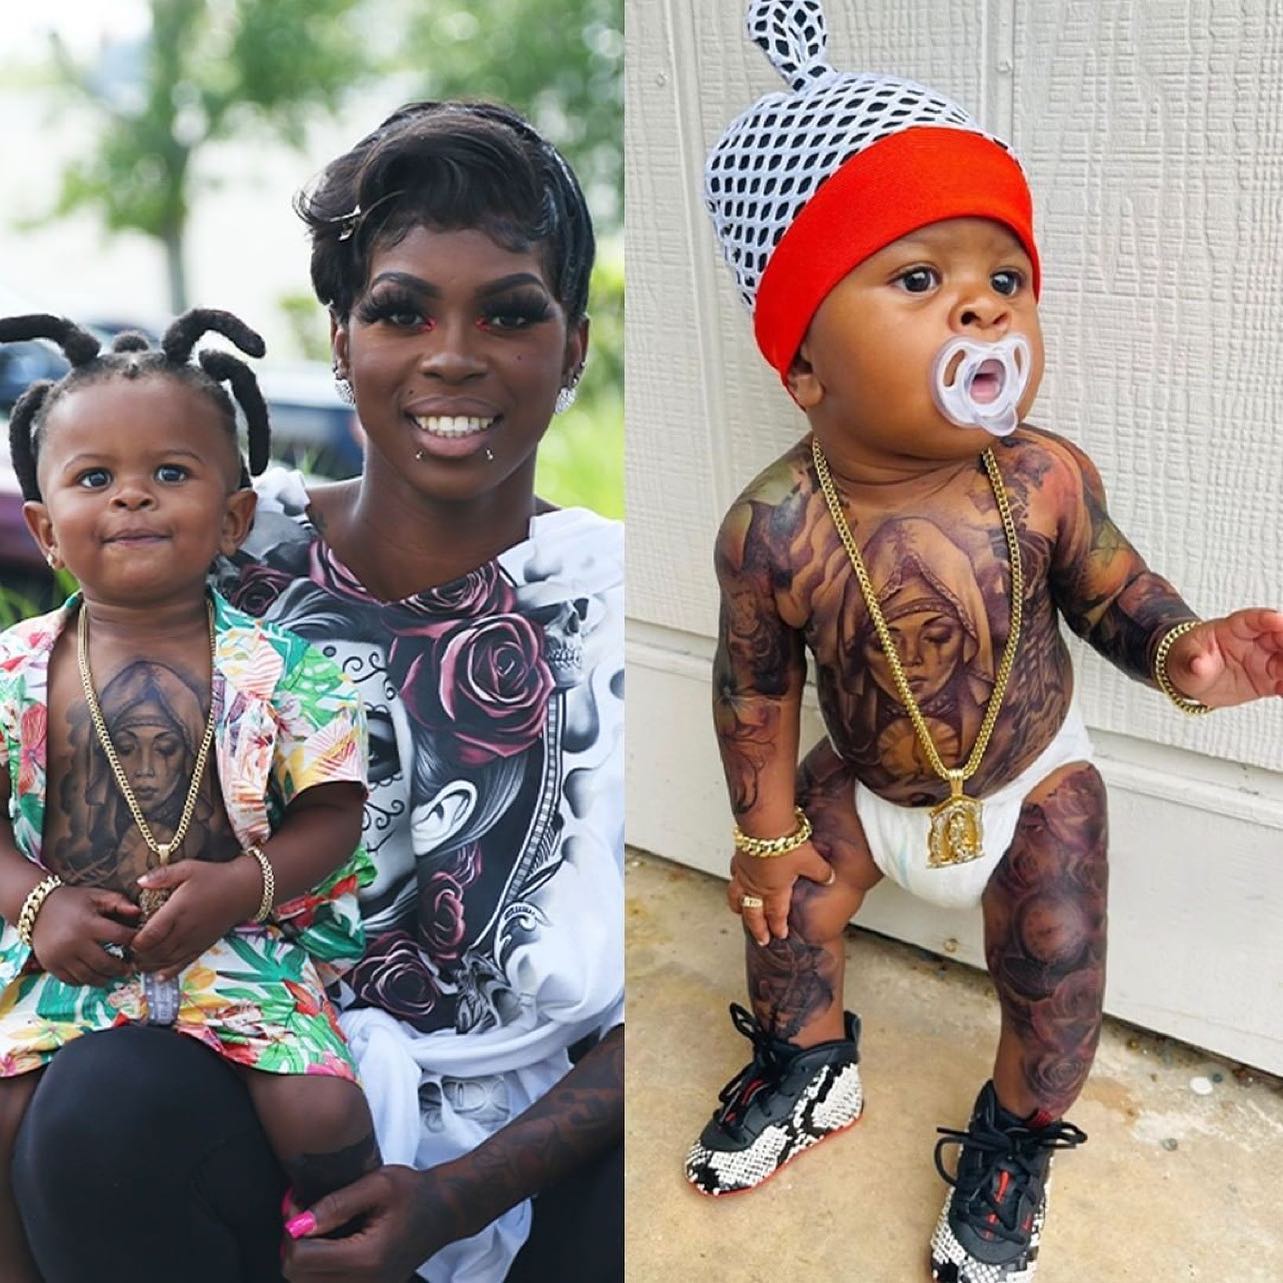 Tatuajes a un Bebé: ¿Se los harías?